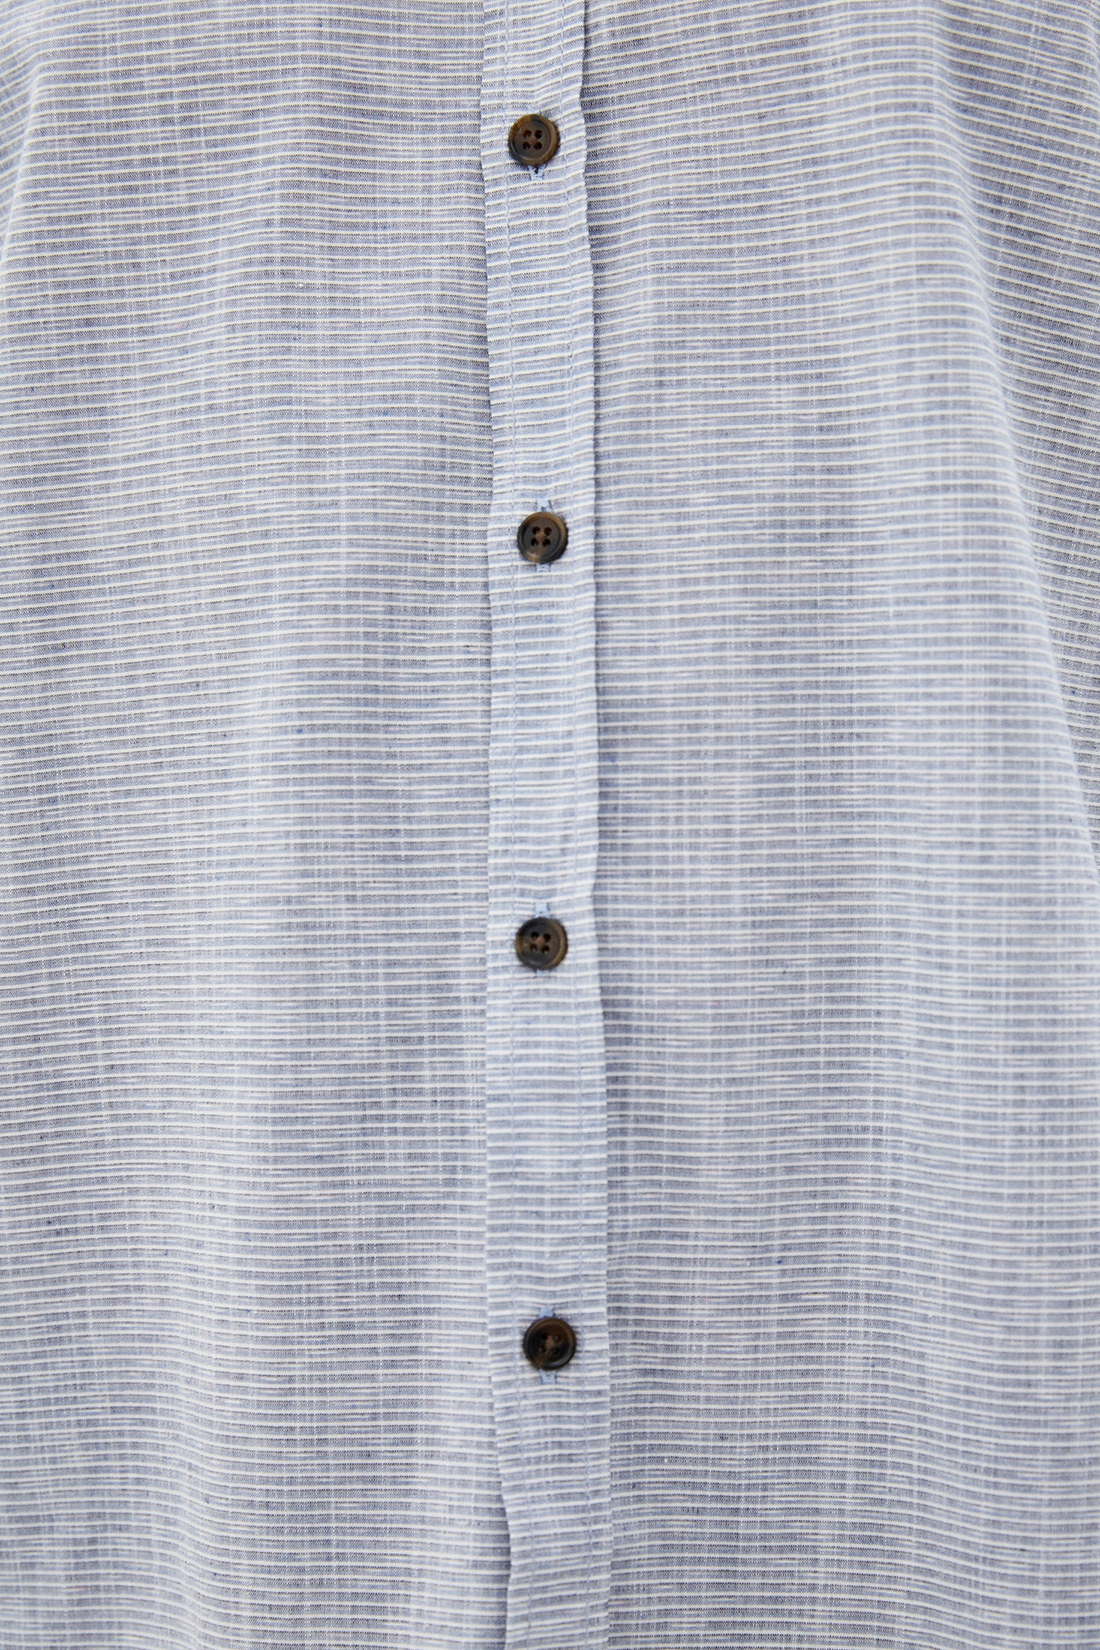 Рубашка с узором из полос (арт. baon B660014), размер 3XL, цвет голубой Рубашка с узором из полос (арт. baon B660014) - фото 3